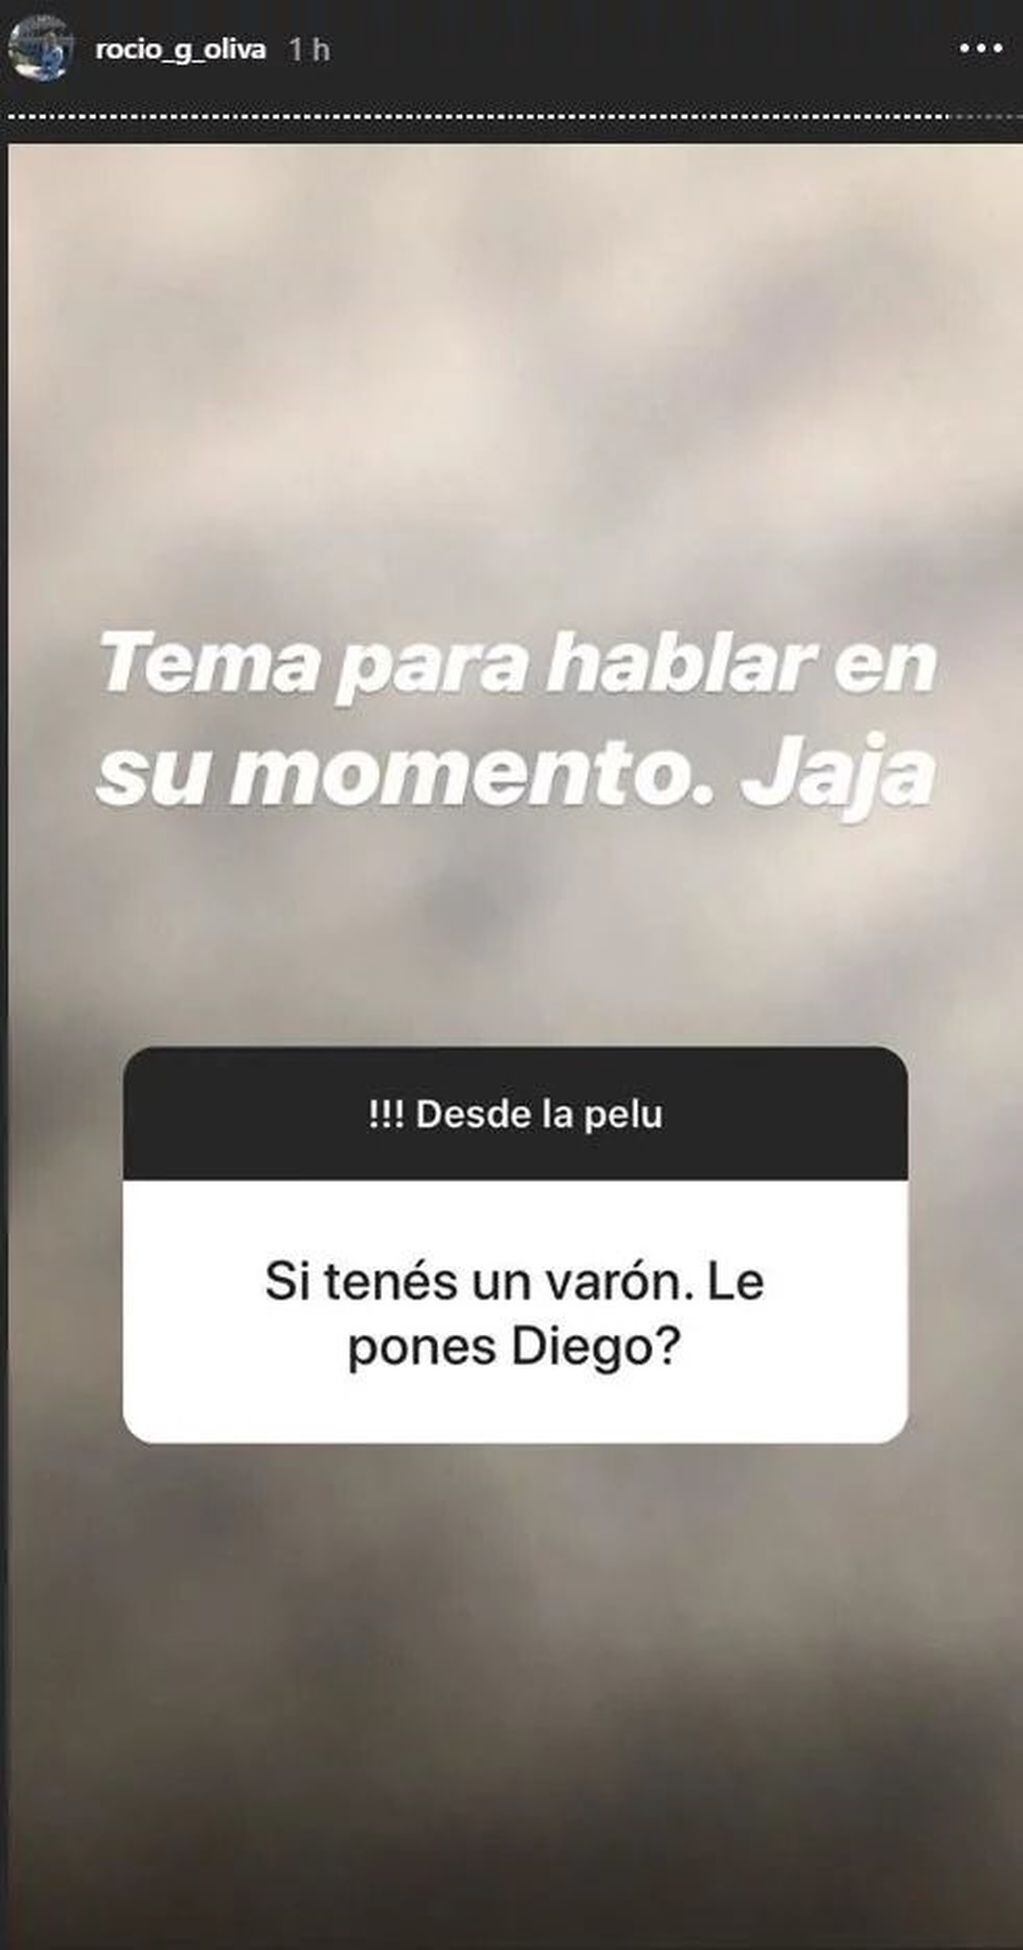 Rocío Oliva en Instagram.